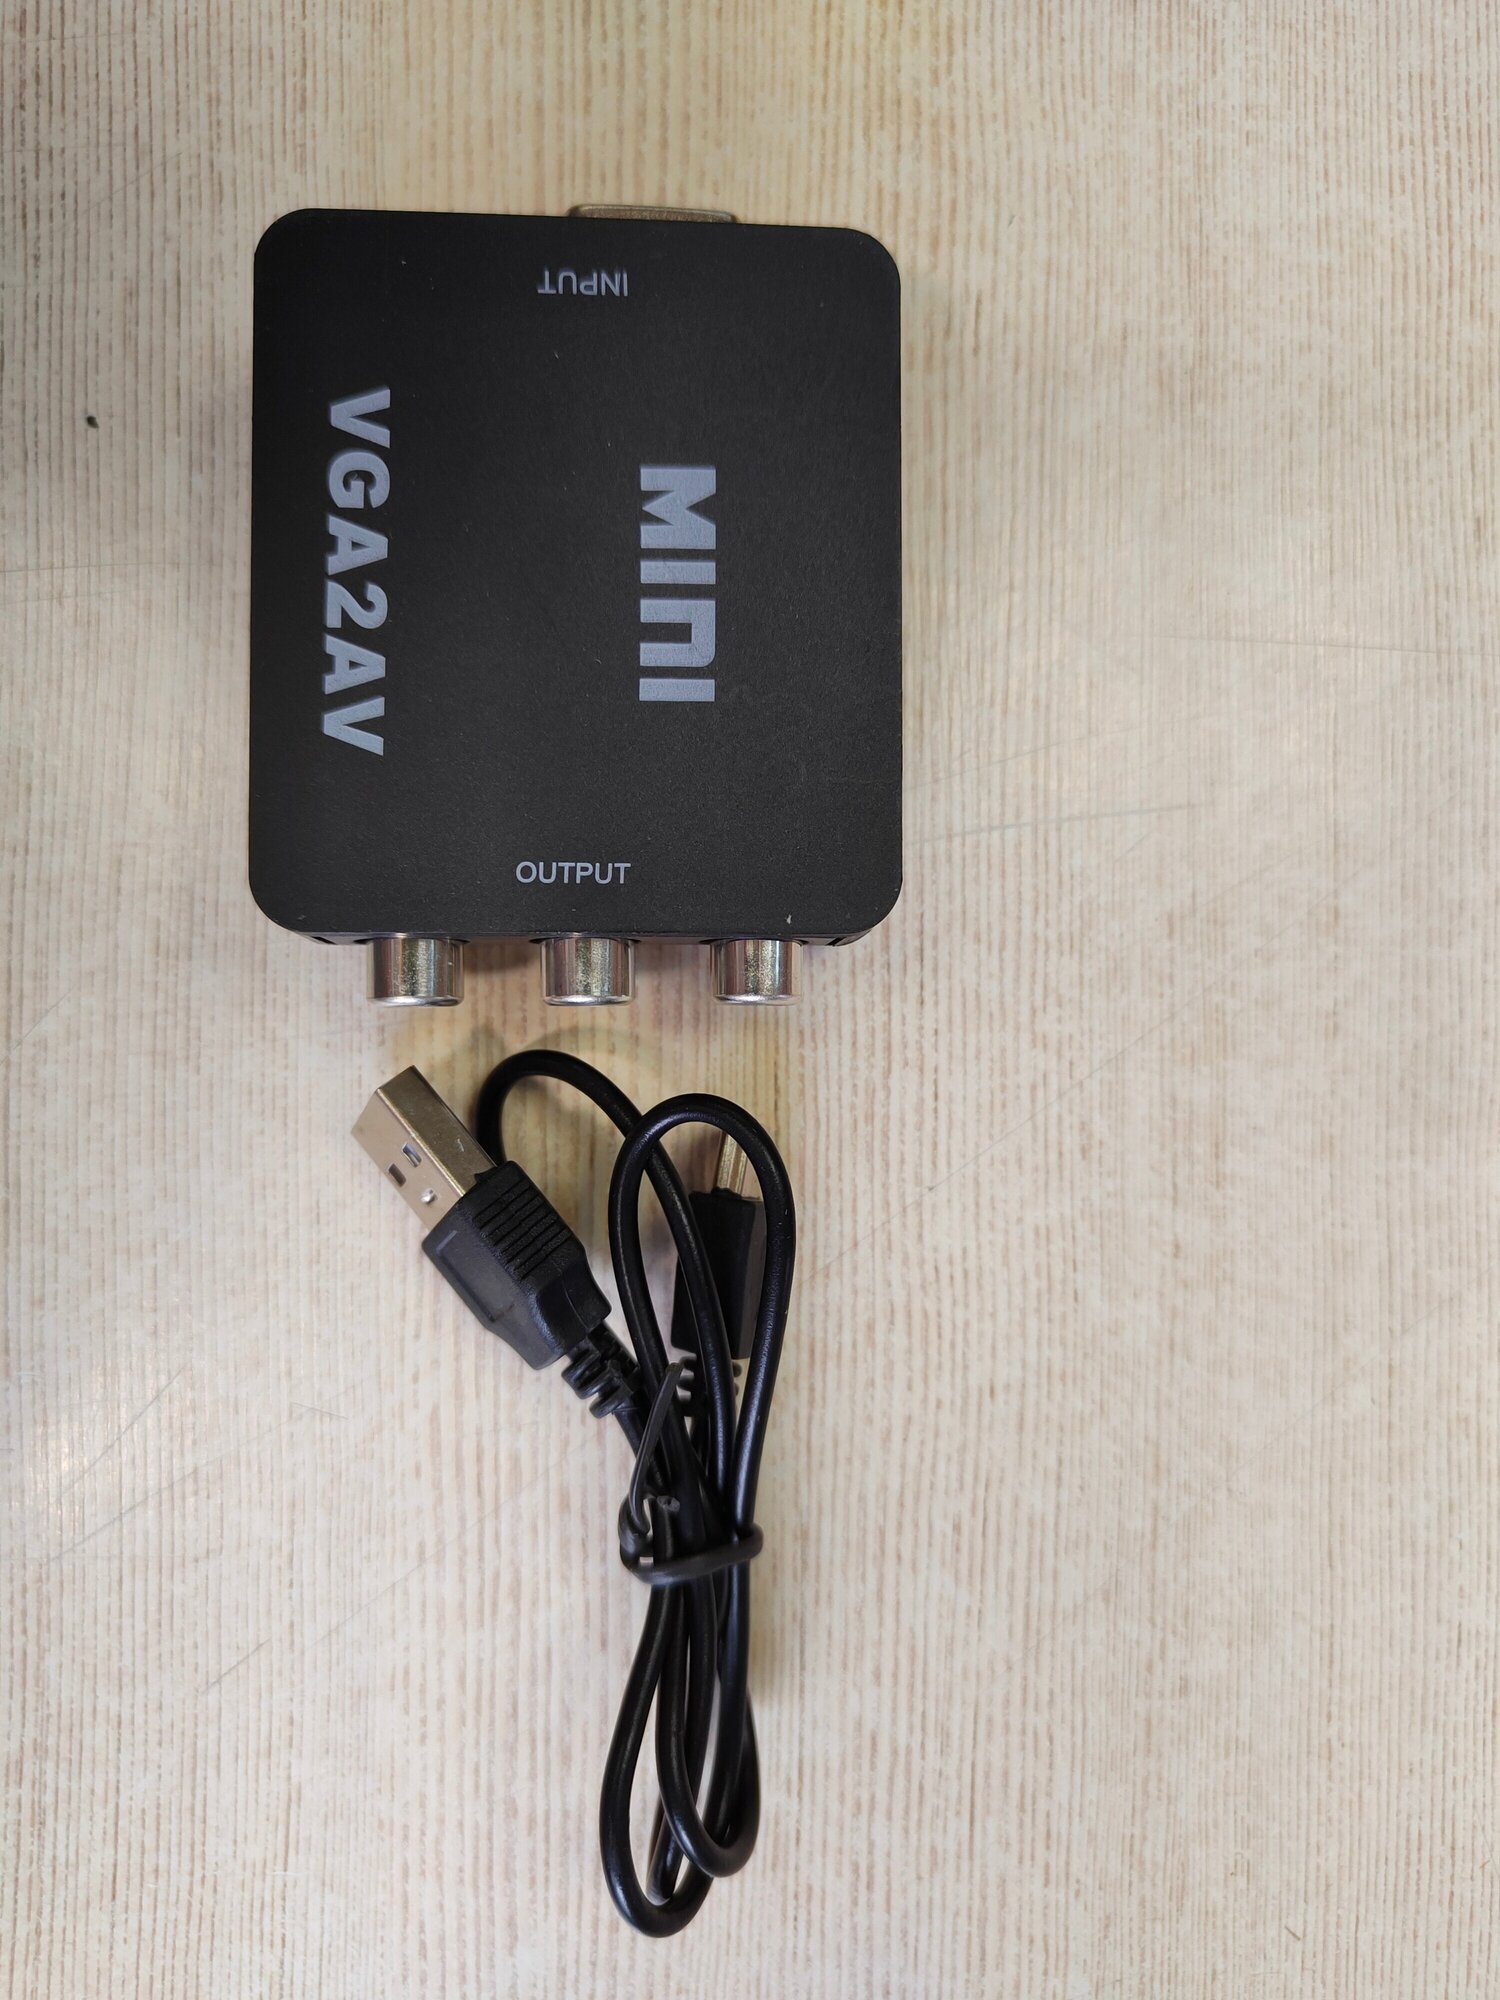 Переходник VGA - AV RCA CVSB L/R адаптер конвертер для монитора, телевизора, ноутбука, компьютера, PS3, Xbox, PC